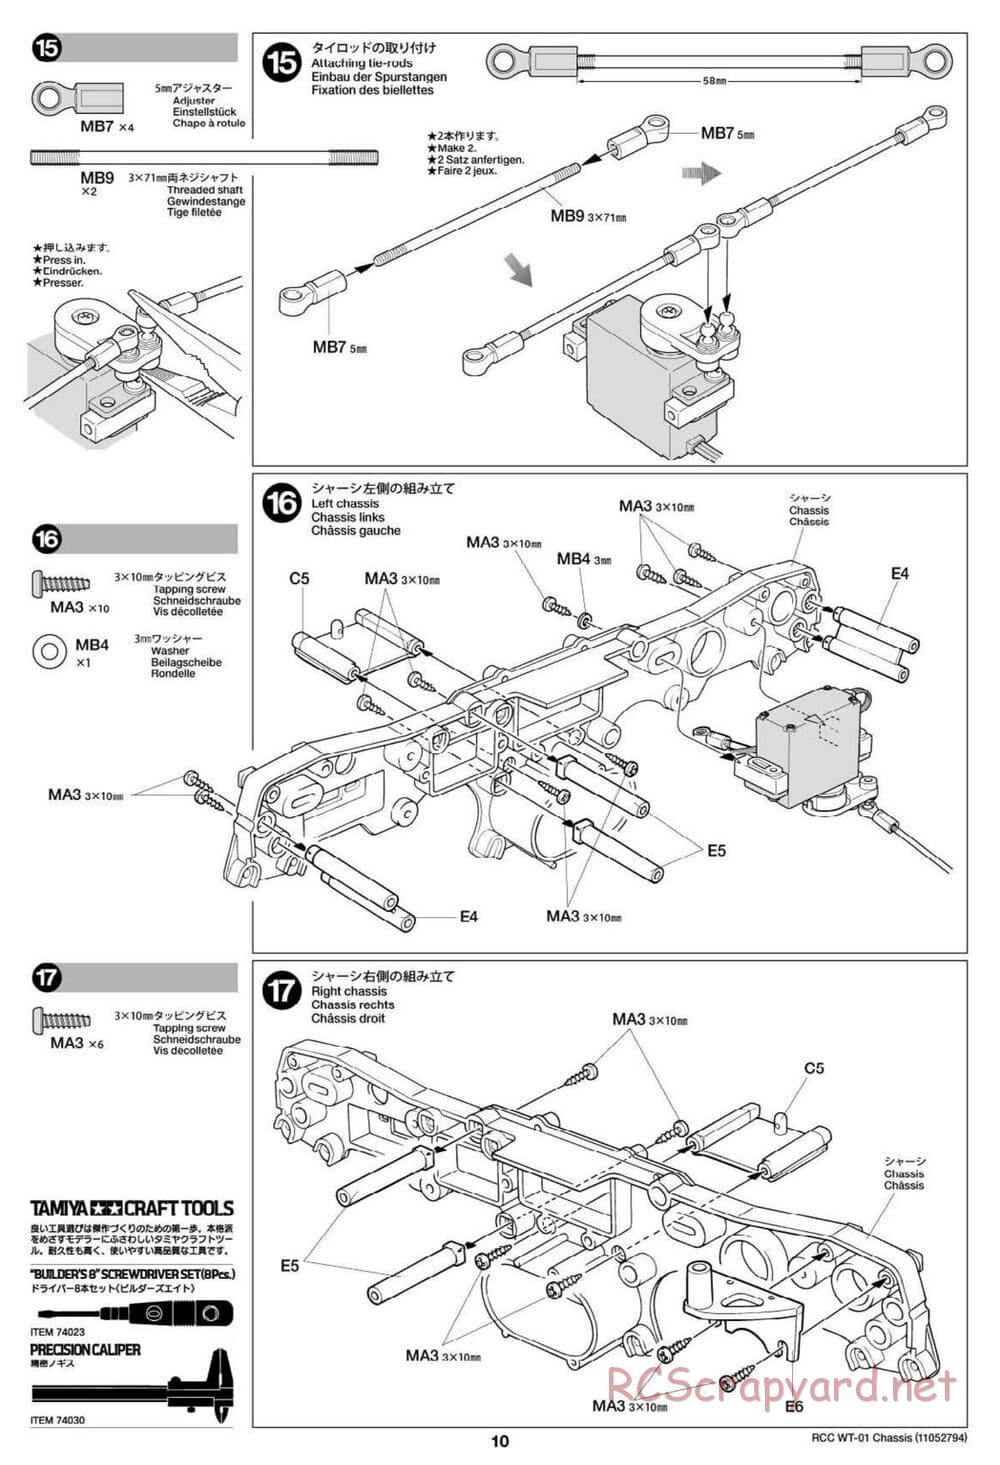 Tamiya - WT-01 Chassis - Manual - Page 10